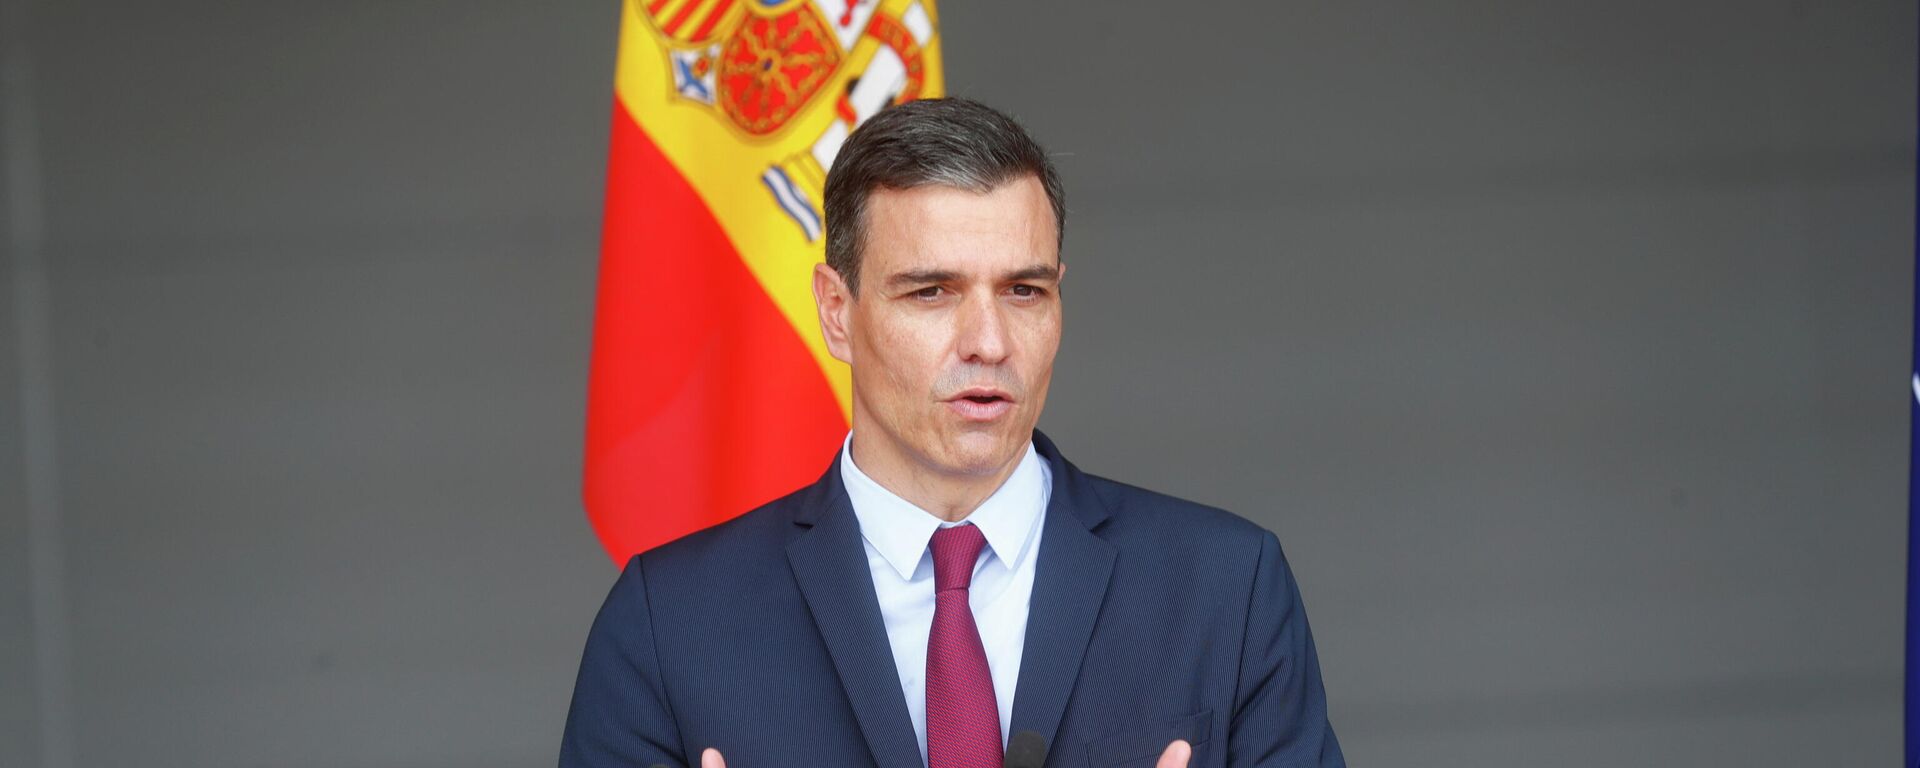 Pedro Sánchez, presidente del Gobierno español - Sputnik Mundo, 1920, 22.07.2021